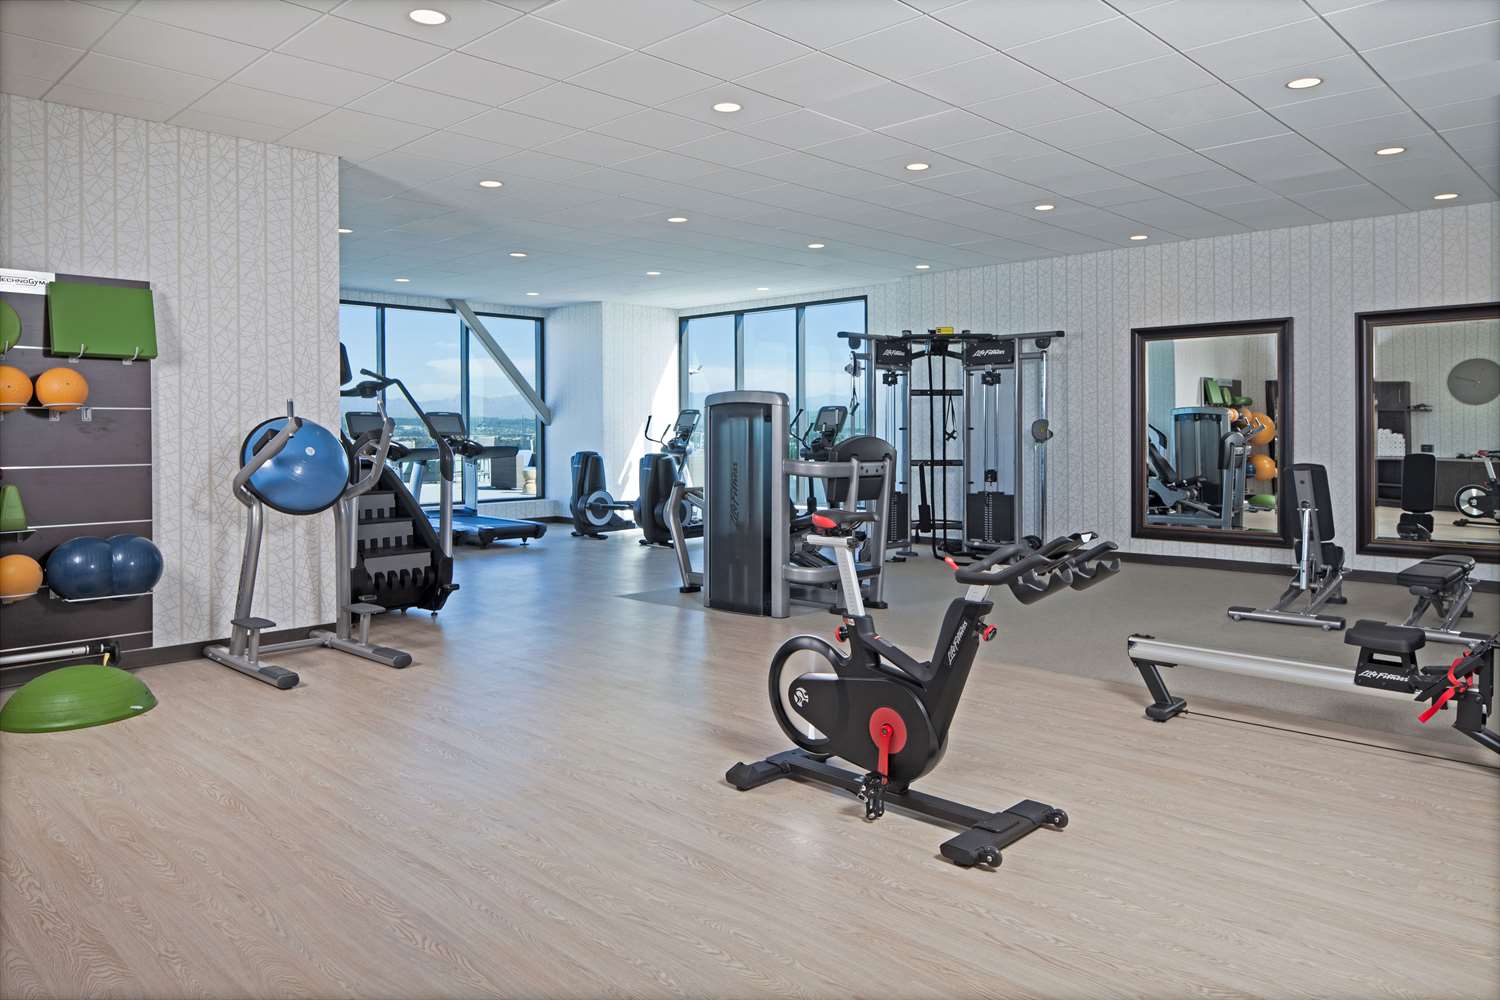 Health club  fitness center  gym_72705394_XXL.jpg